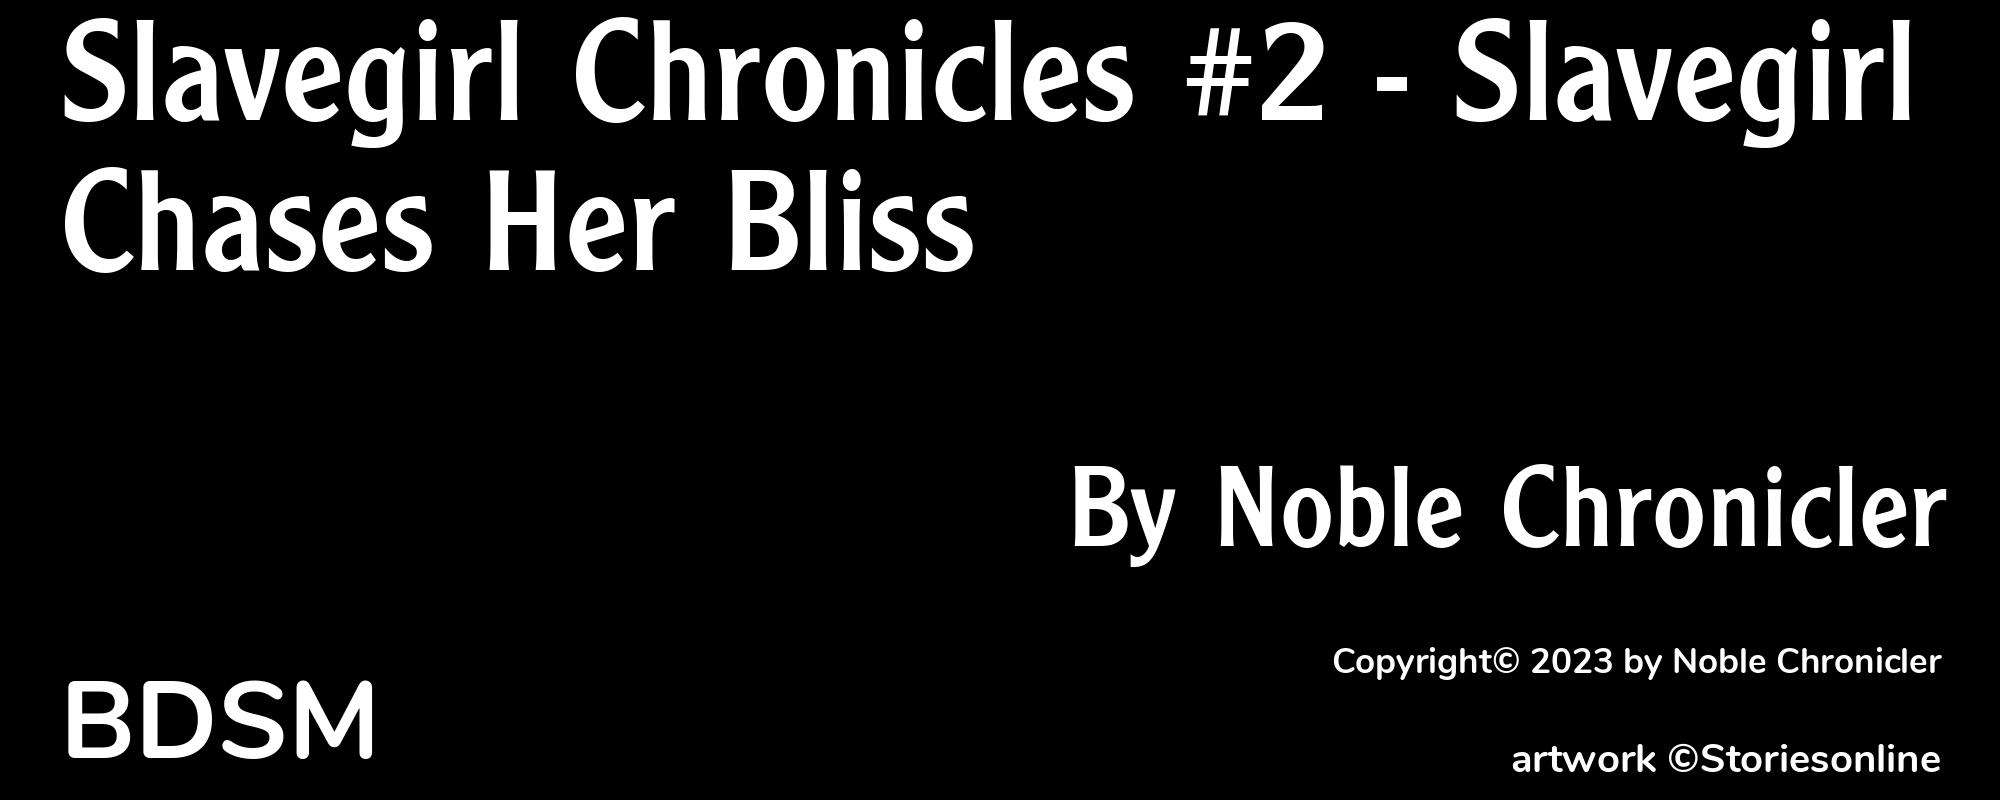 Slavegirl Chronicles #2 - Slavegirl Chases Her Bliss - Cover